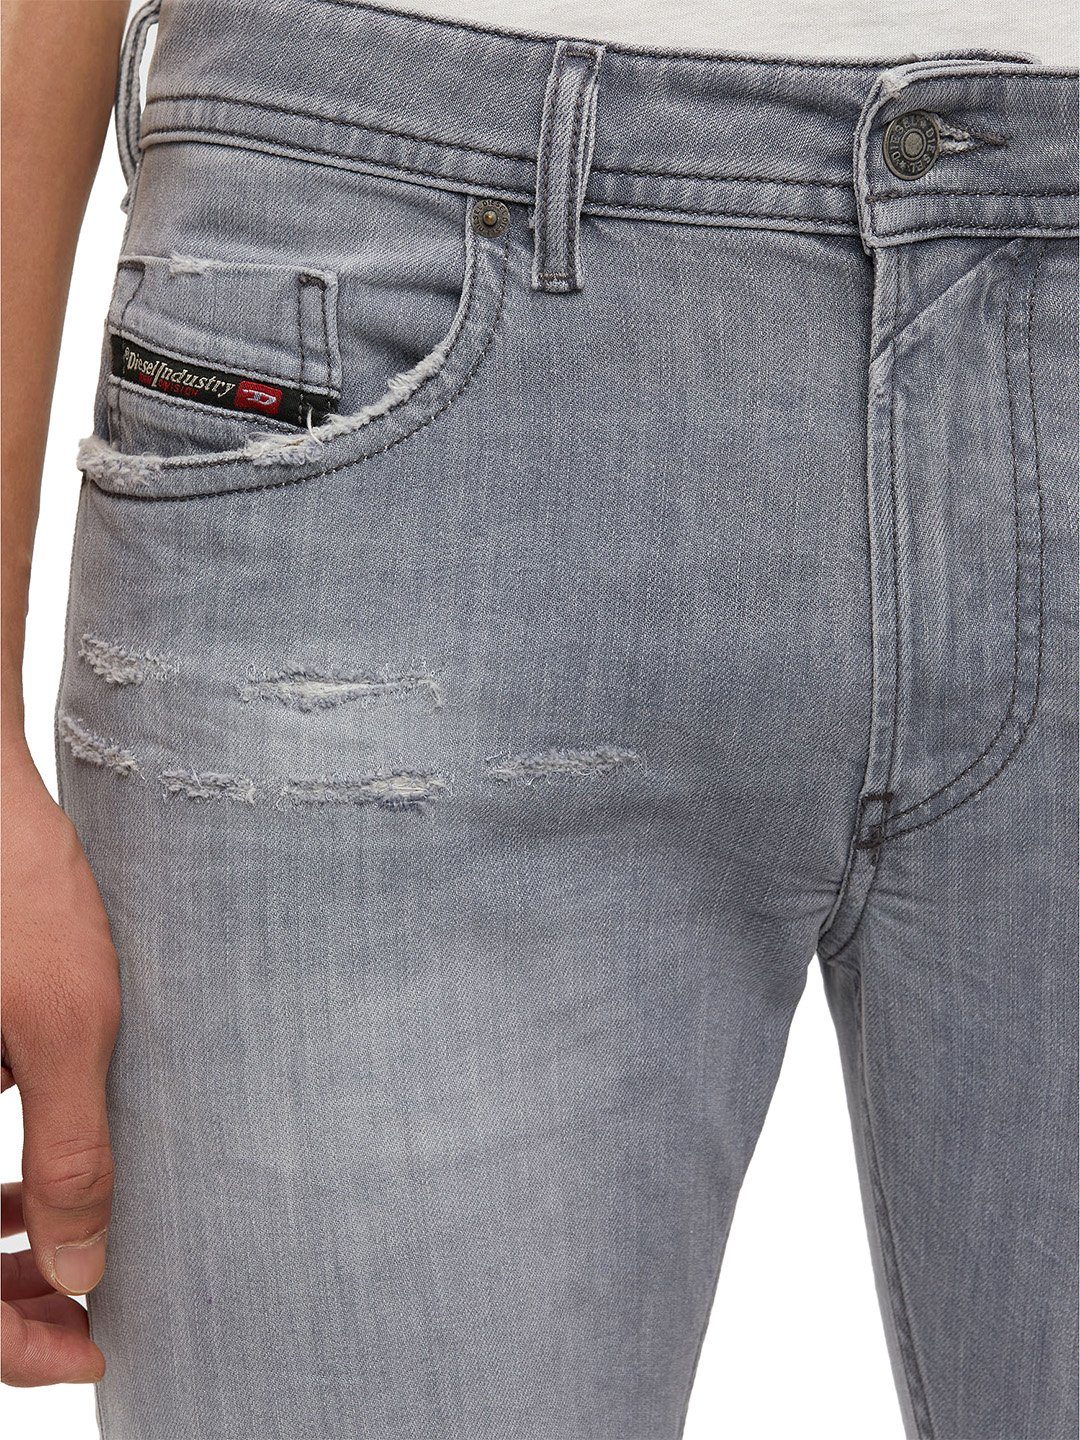 Hose Grau Slim-fit-Jeans - Diesel Thommer-X 009DC Stretch W29 L32 -